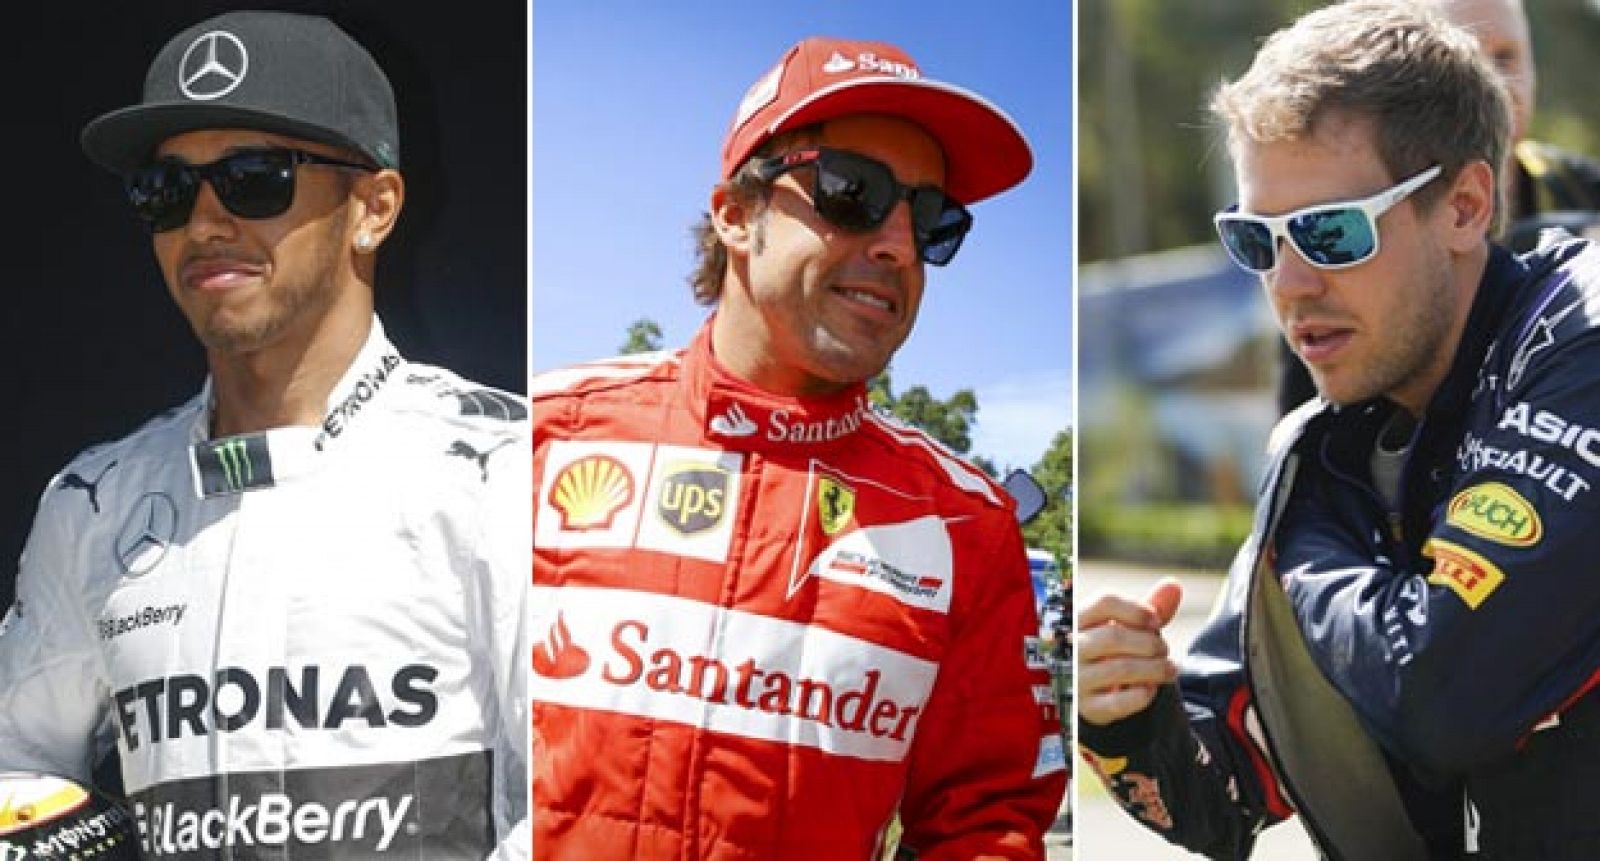 Los pilotos Lewis Hamilton, Fernando Alonso y Sebastian Vettel se preparan para luchar por el Mundial F1 2014.